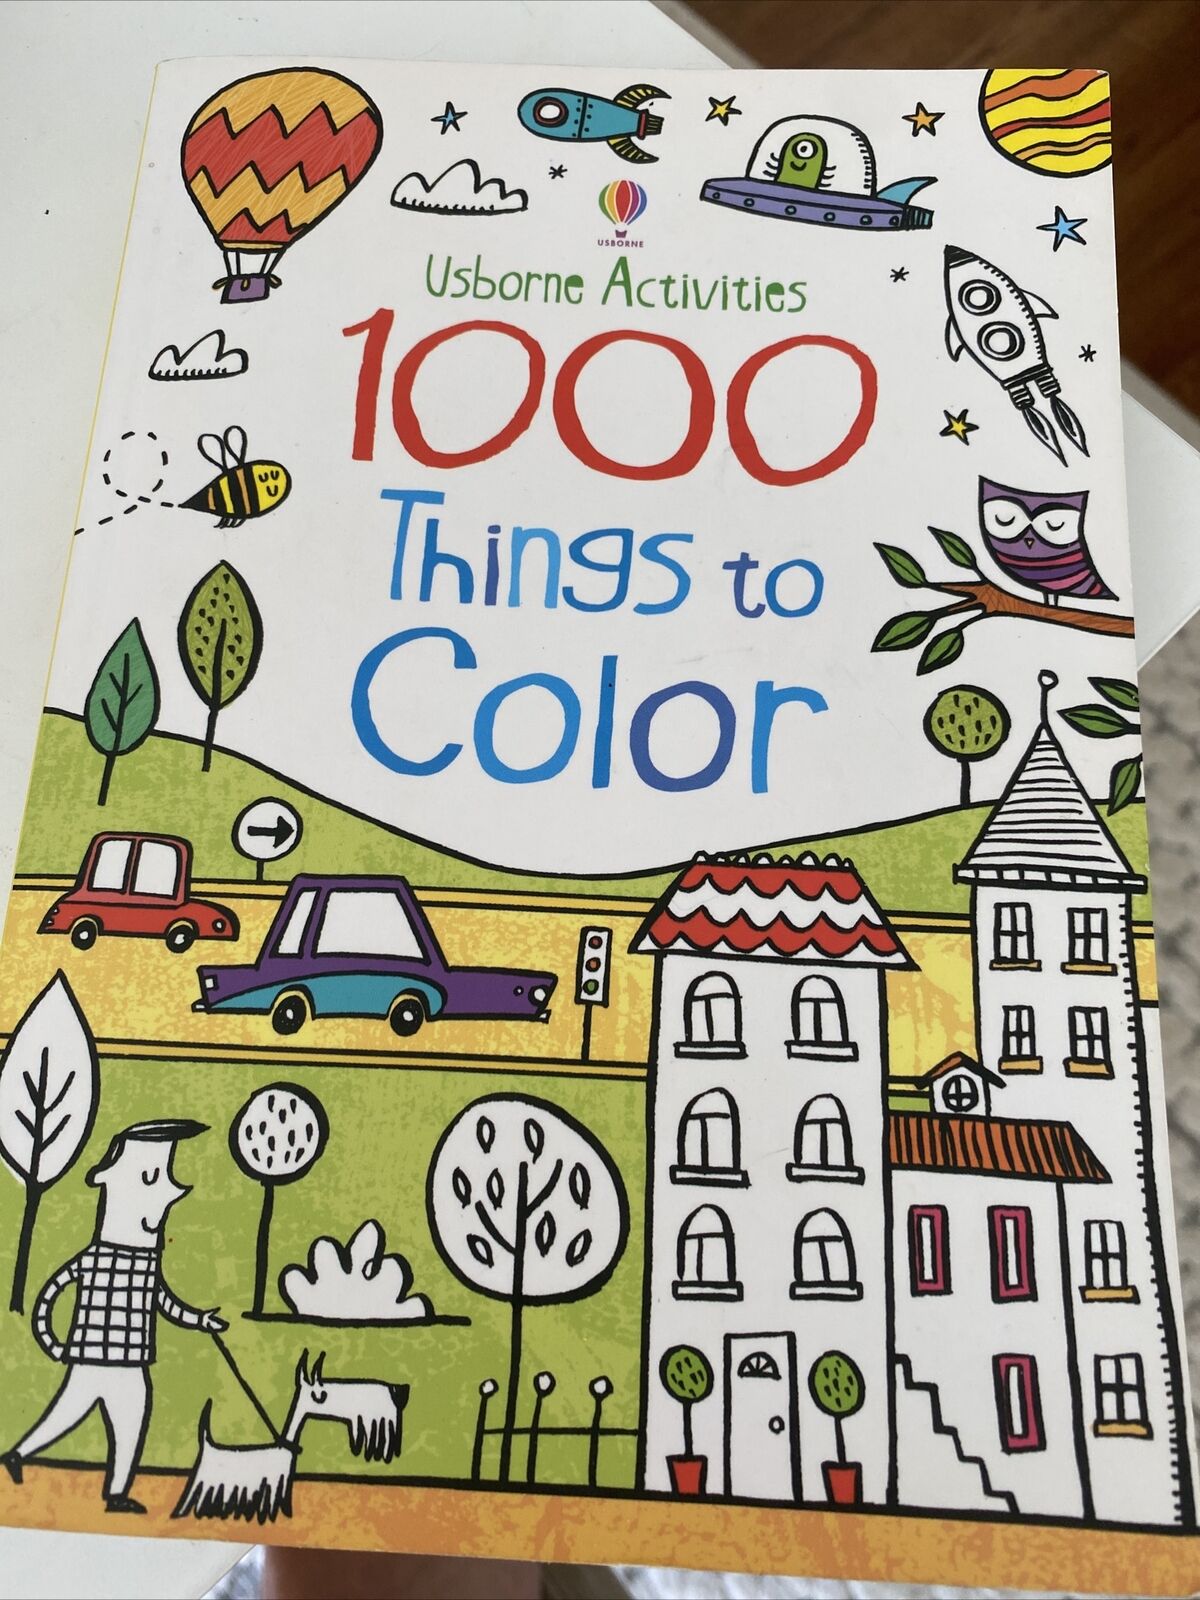 Épinglé sur +1000 Best Coloring Books images